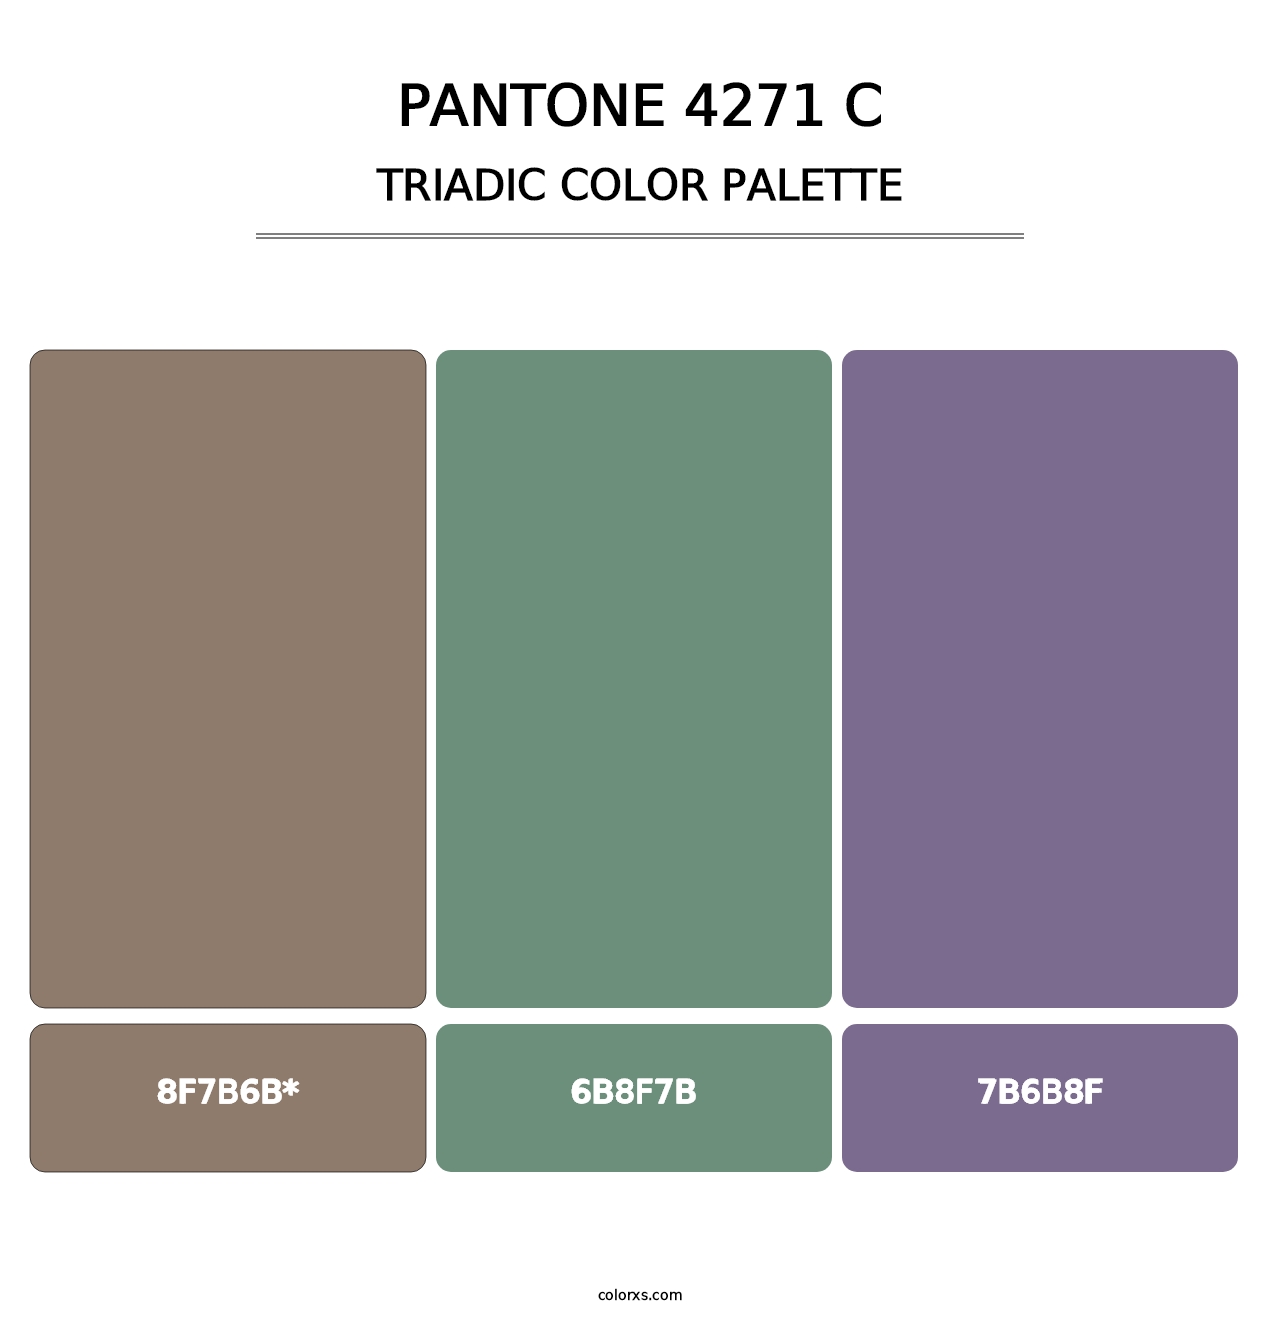 PANTONE 4271 C - Triadic Color Palette